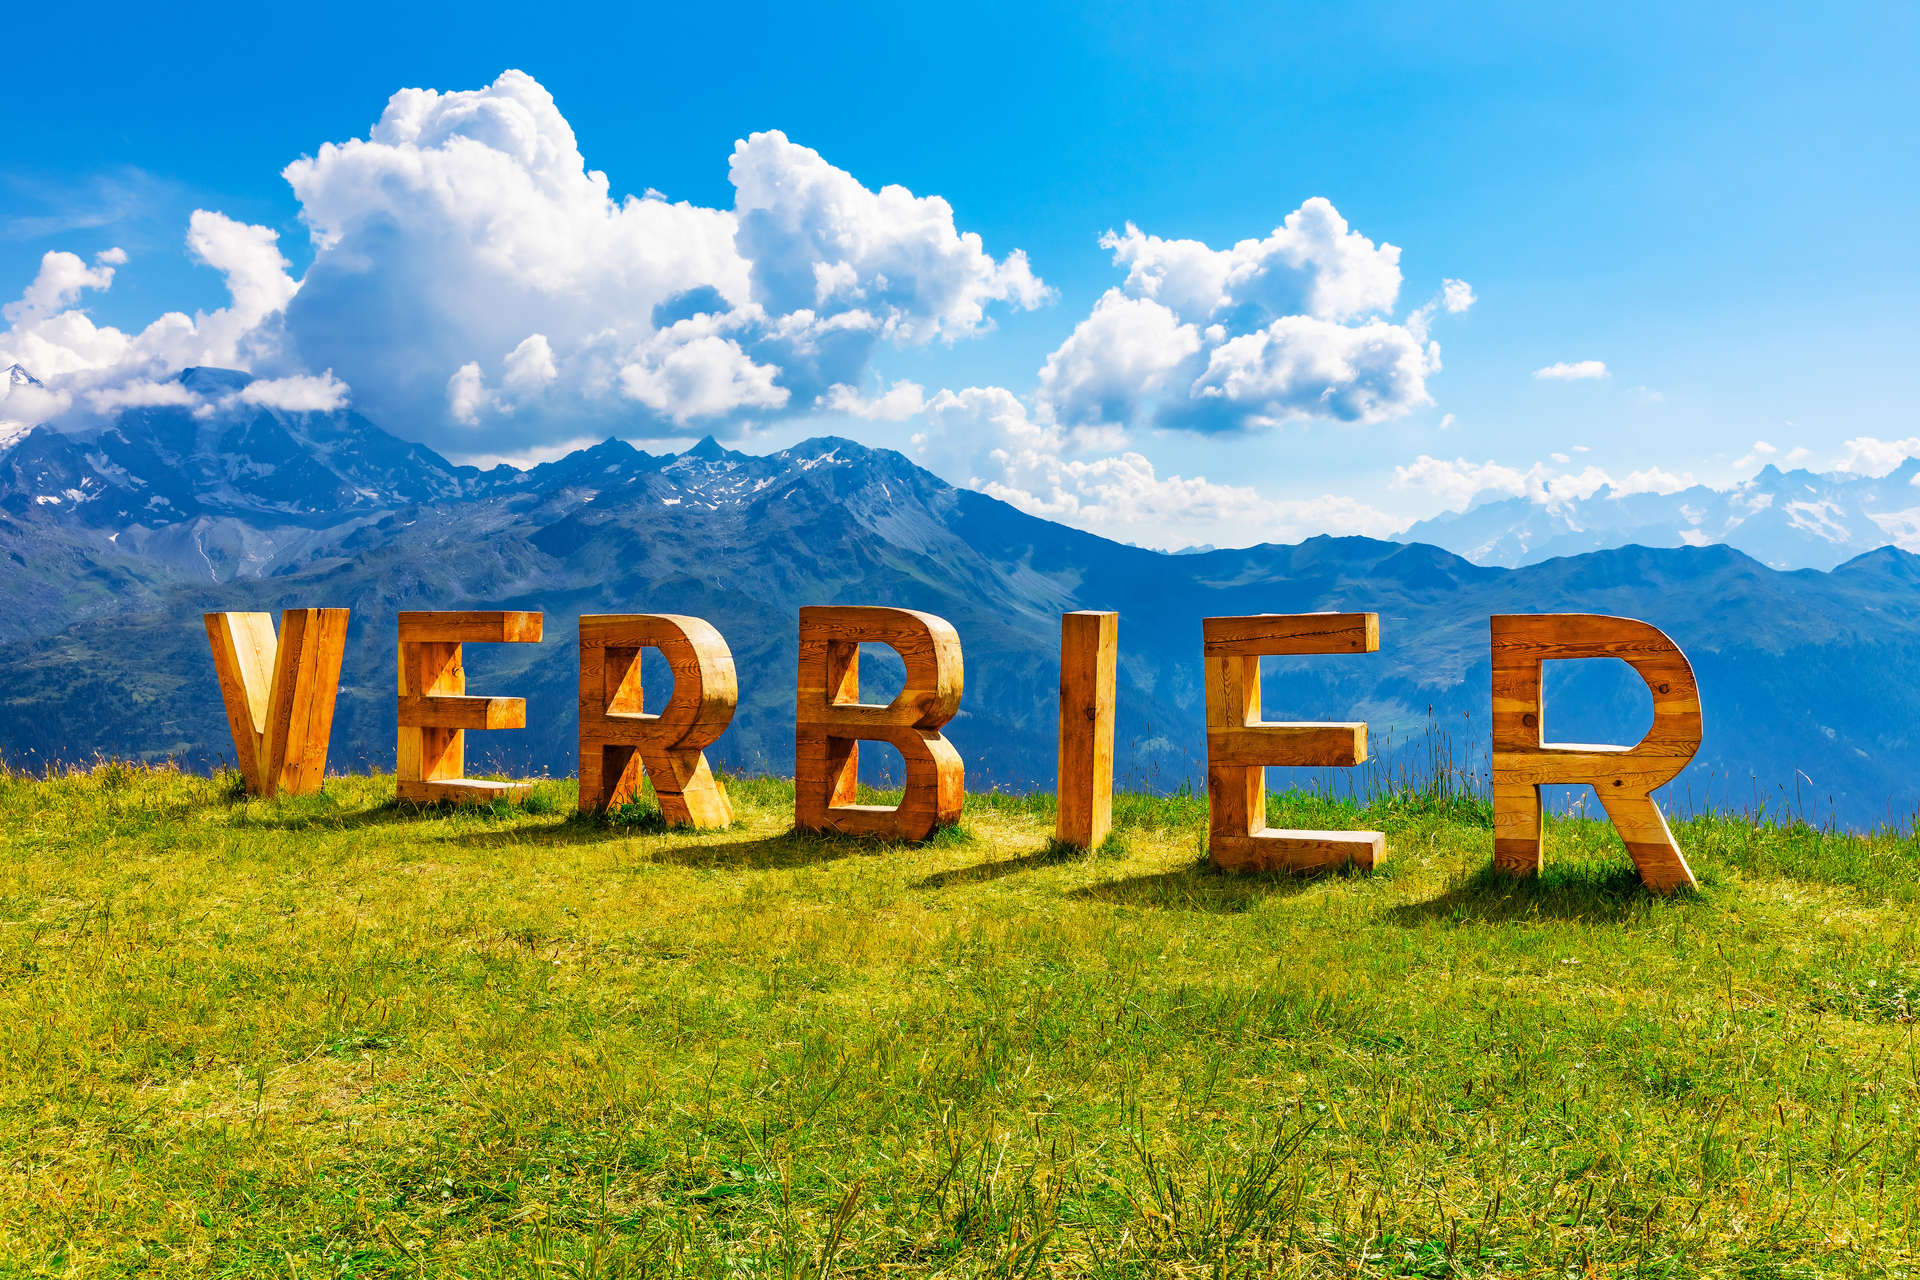 Vous profiterez d'innombrables vues à couper le souffle lors de votre visite à Verbier en été.